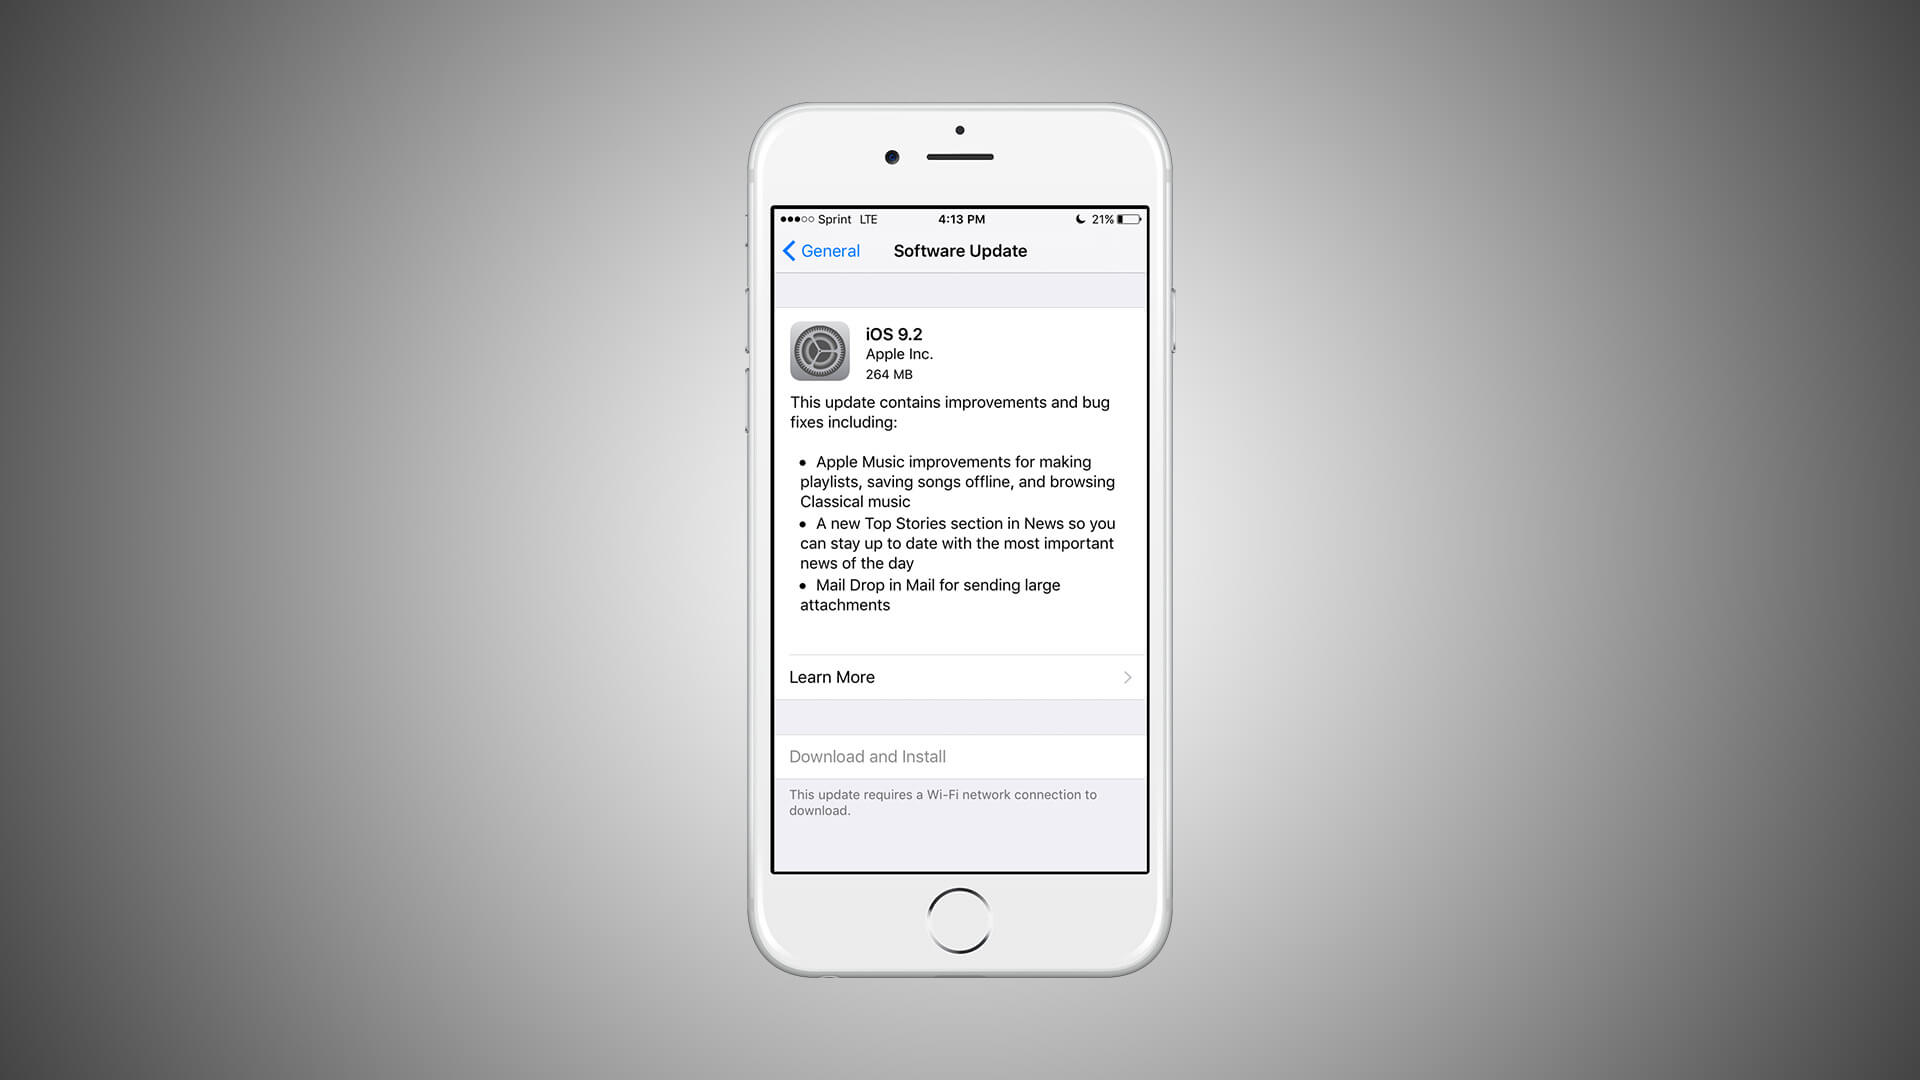 iOS 9.2 has been released!